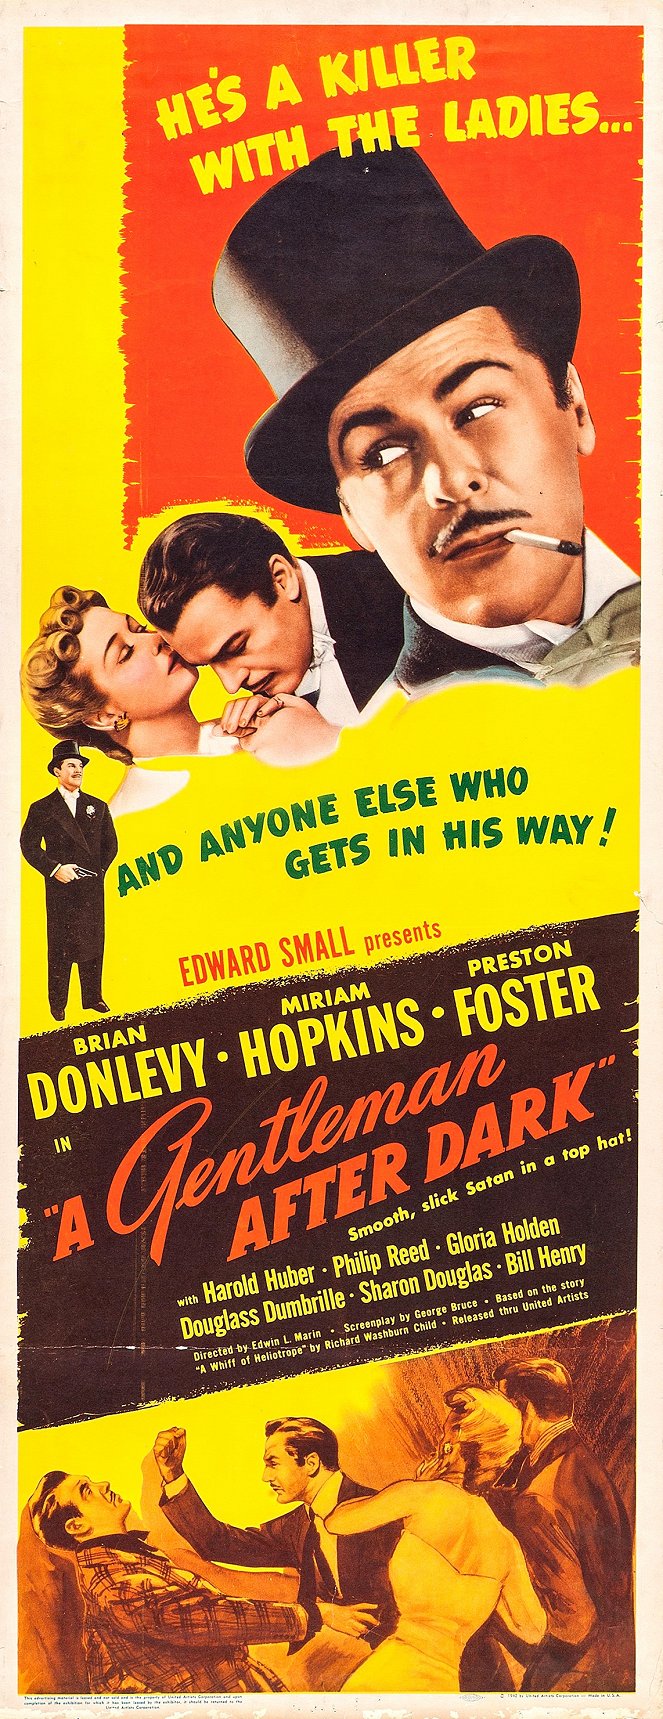 A Gentleman After Dark - Cartazes